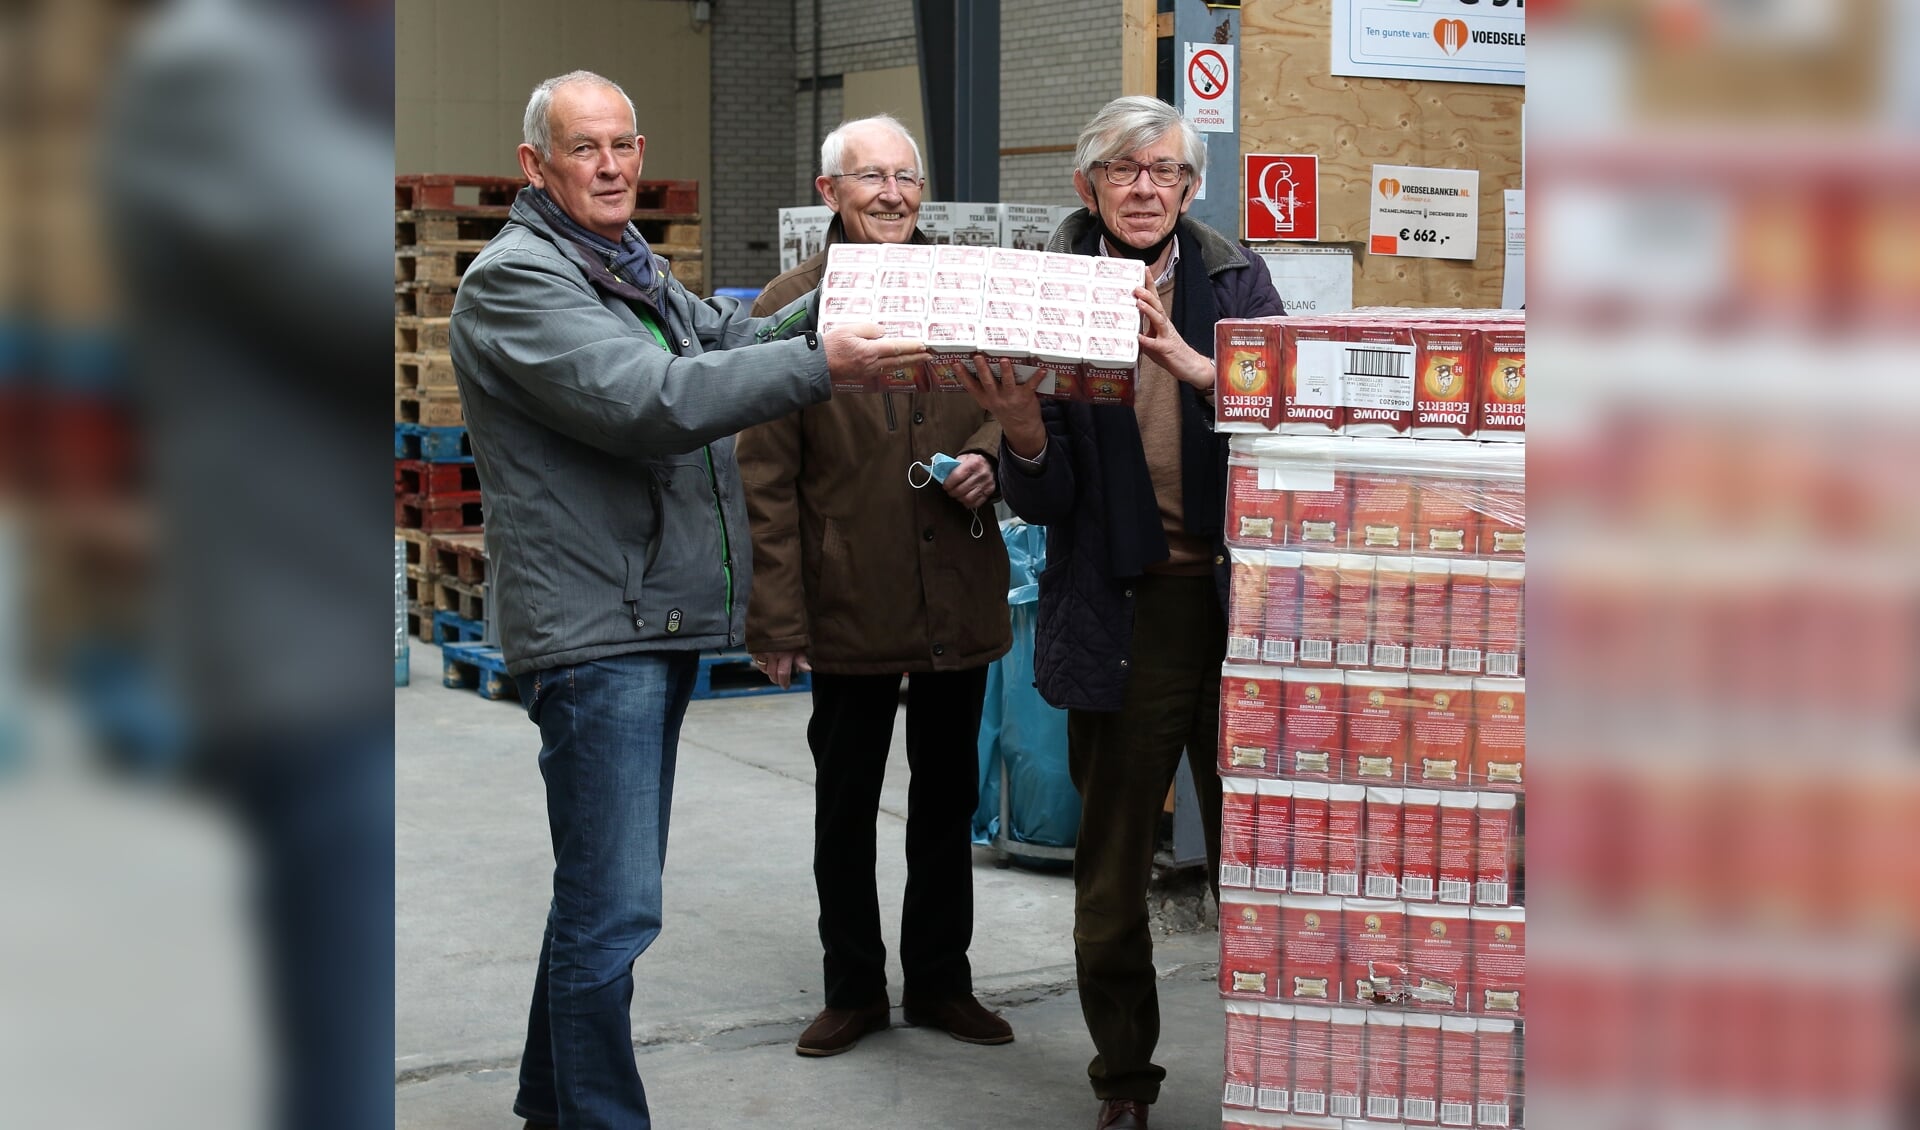 Symbolische overdracht van de koffie door de president van de Lionsclub Alkmaar Phoenix (links) aan de voorzitter van de Voedselbank Alkmaar.